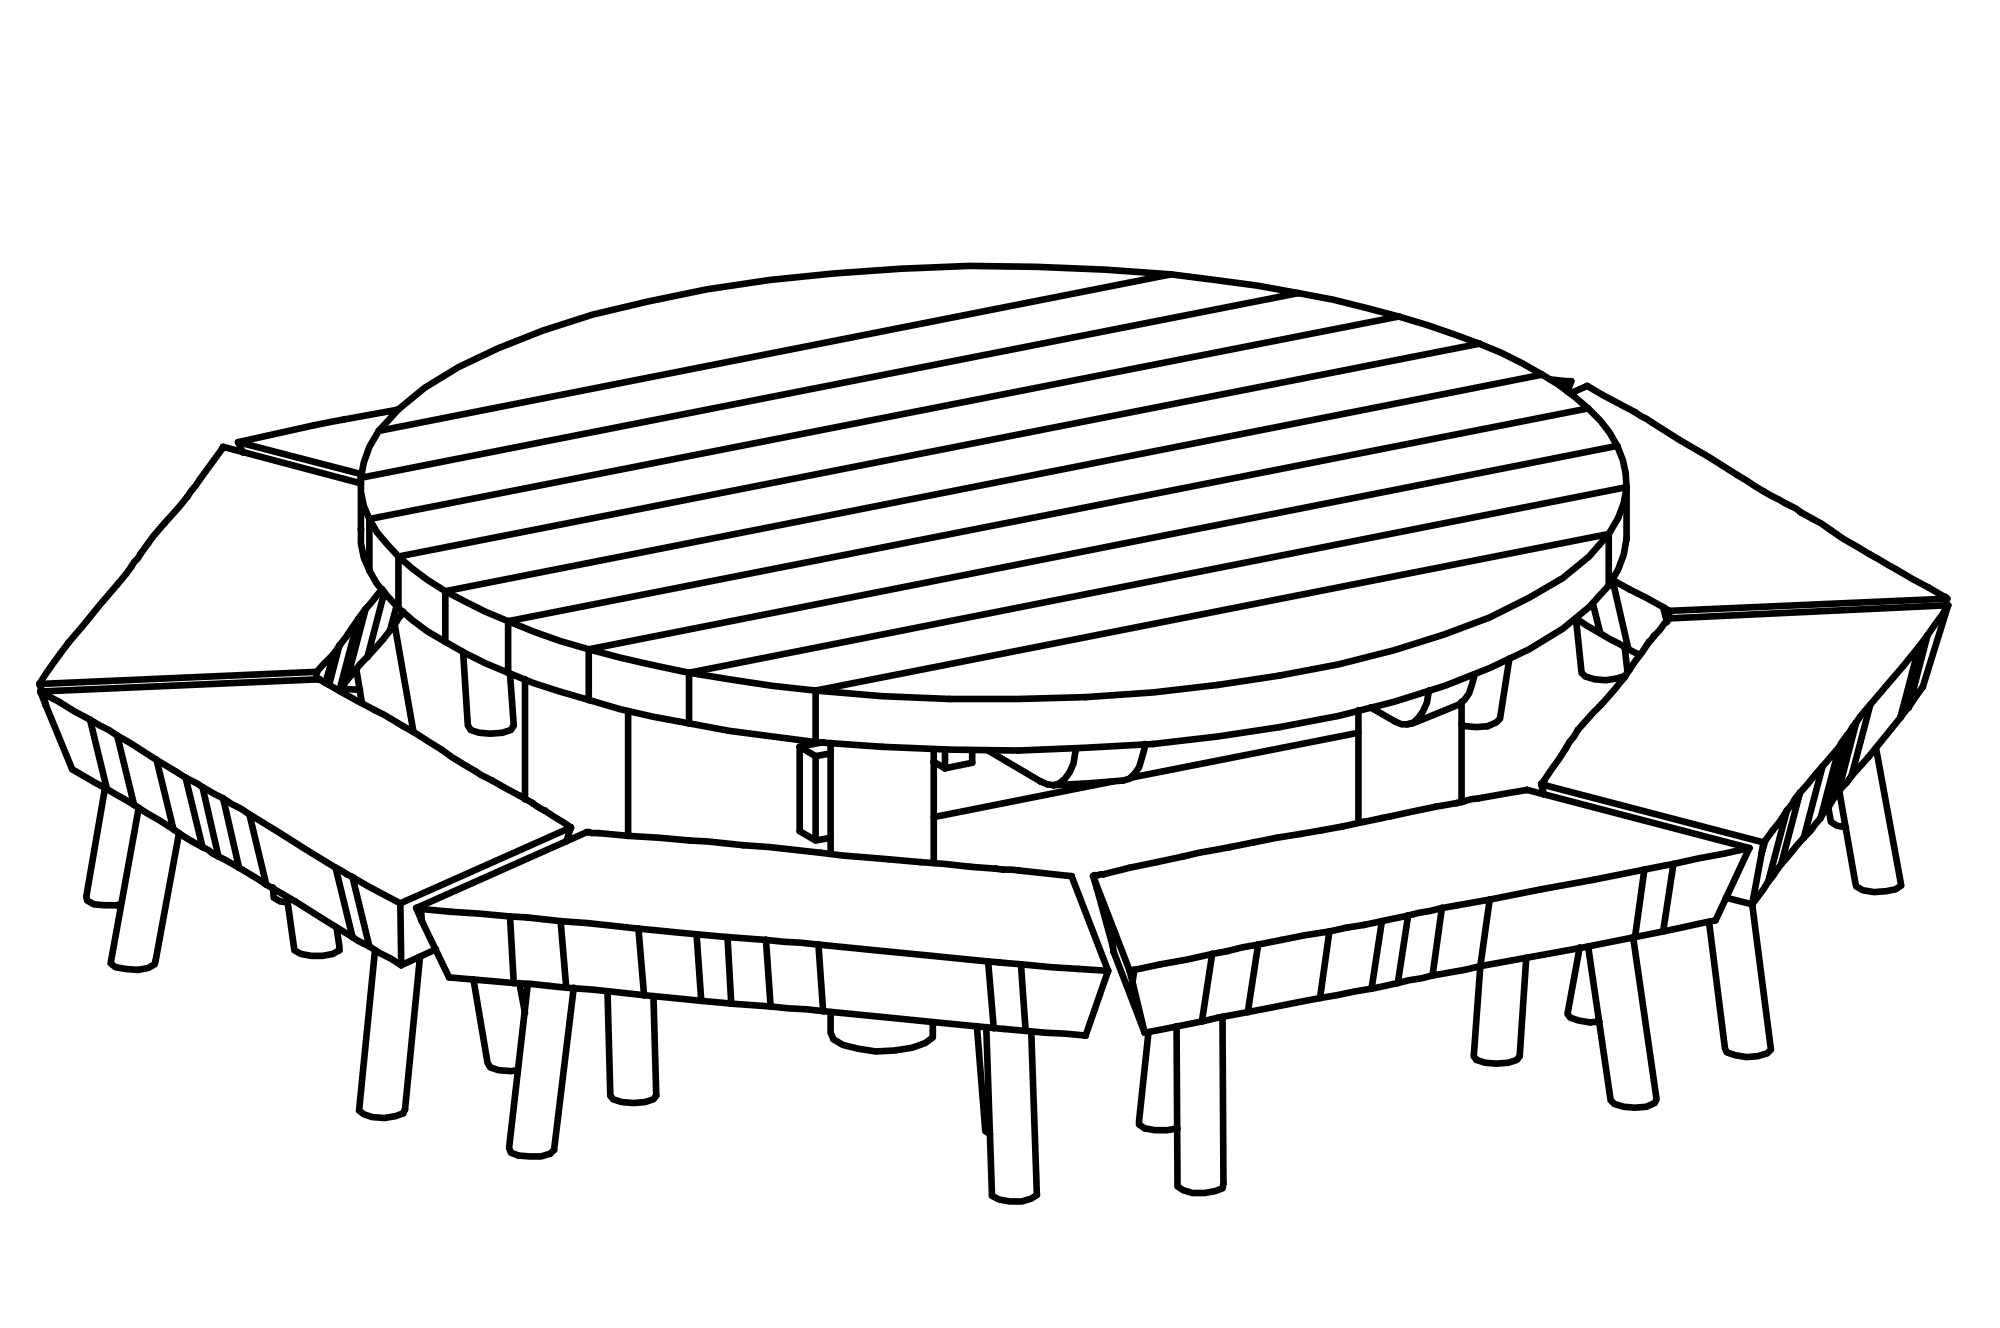 Runder Tisch mit 8 Bänken